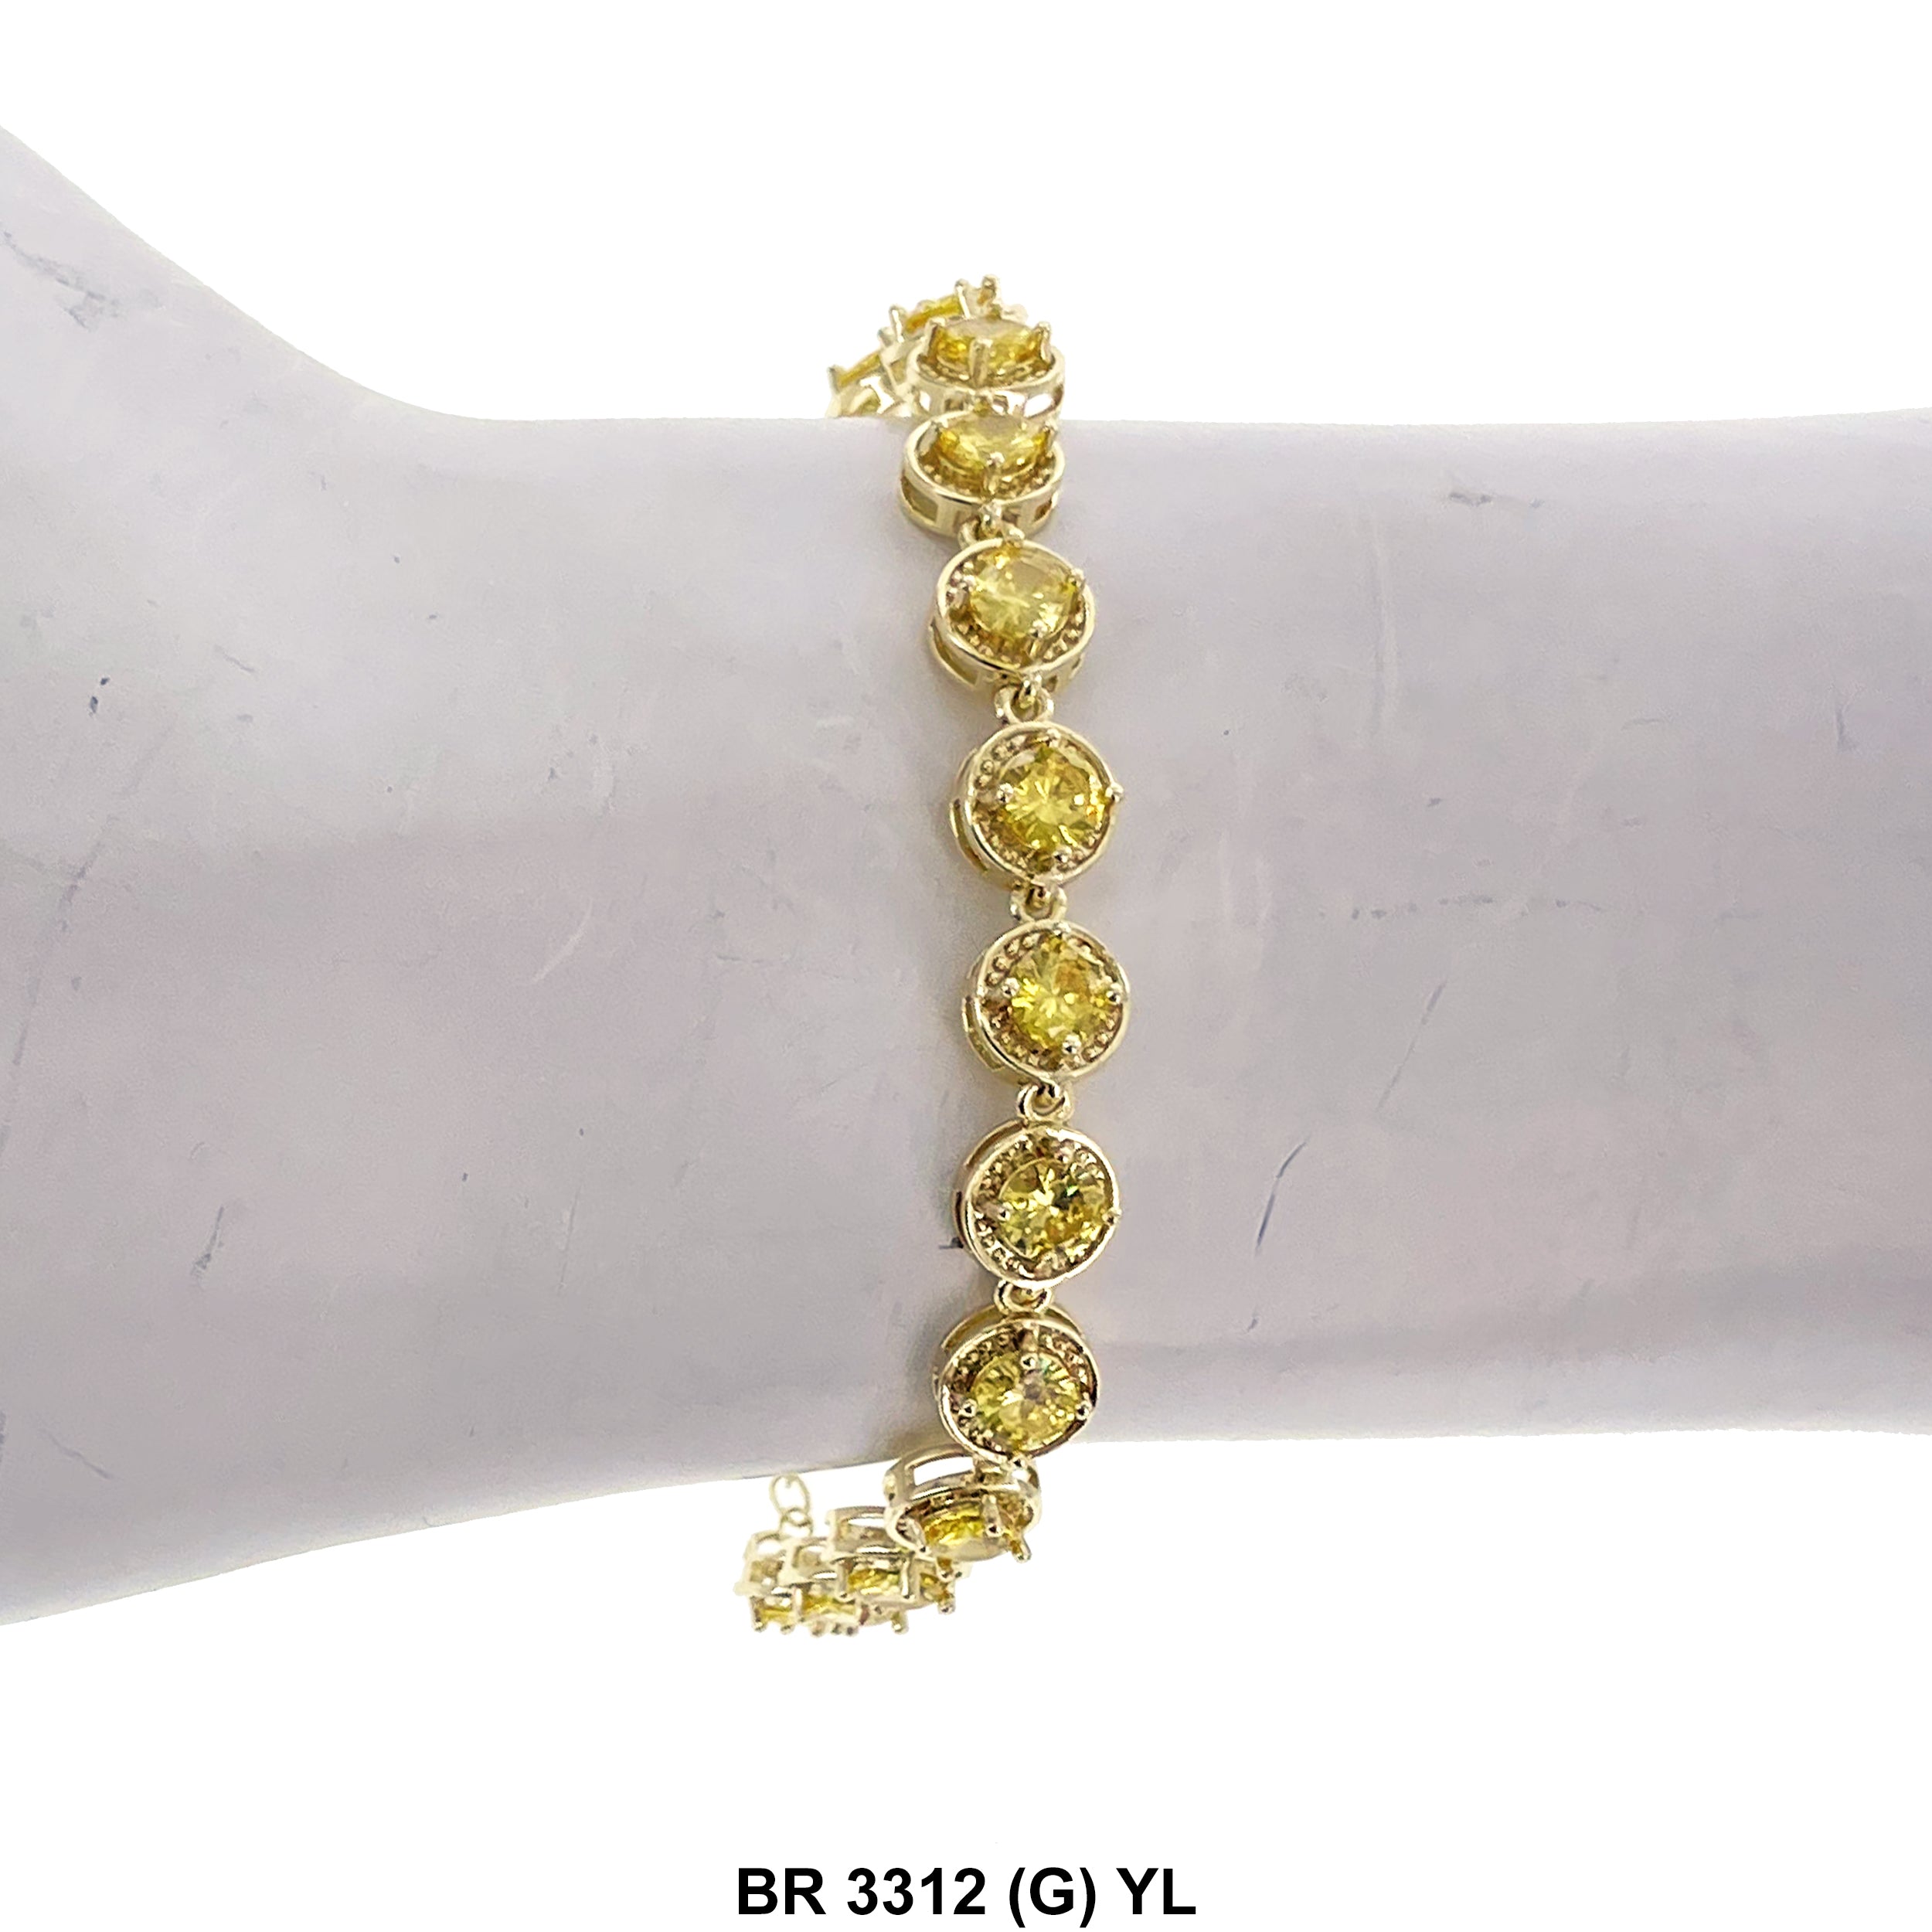 Cubic Zirconia Tennis Bracelet BR 3312 (G) YL